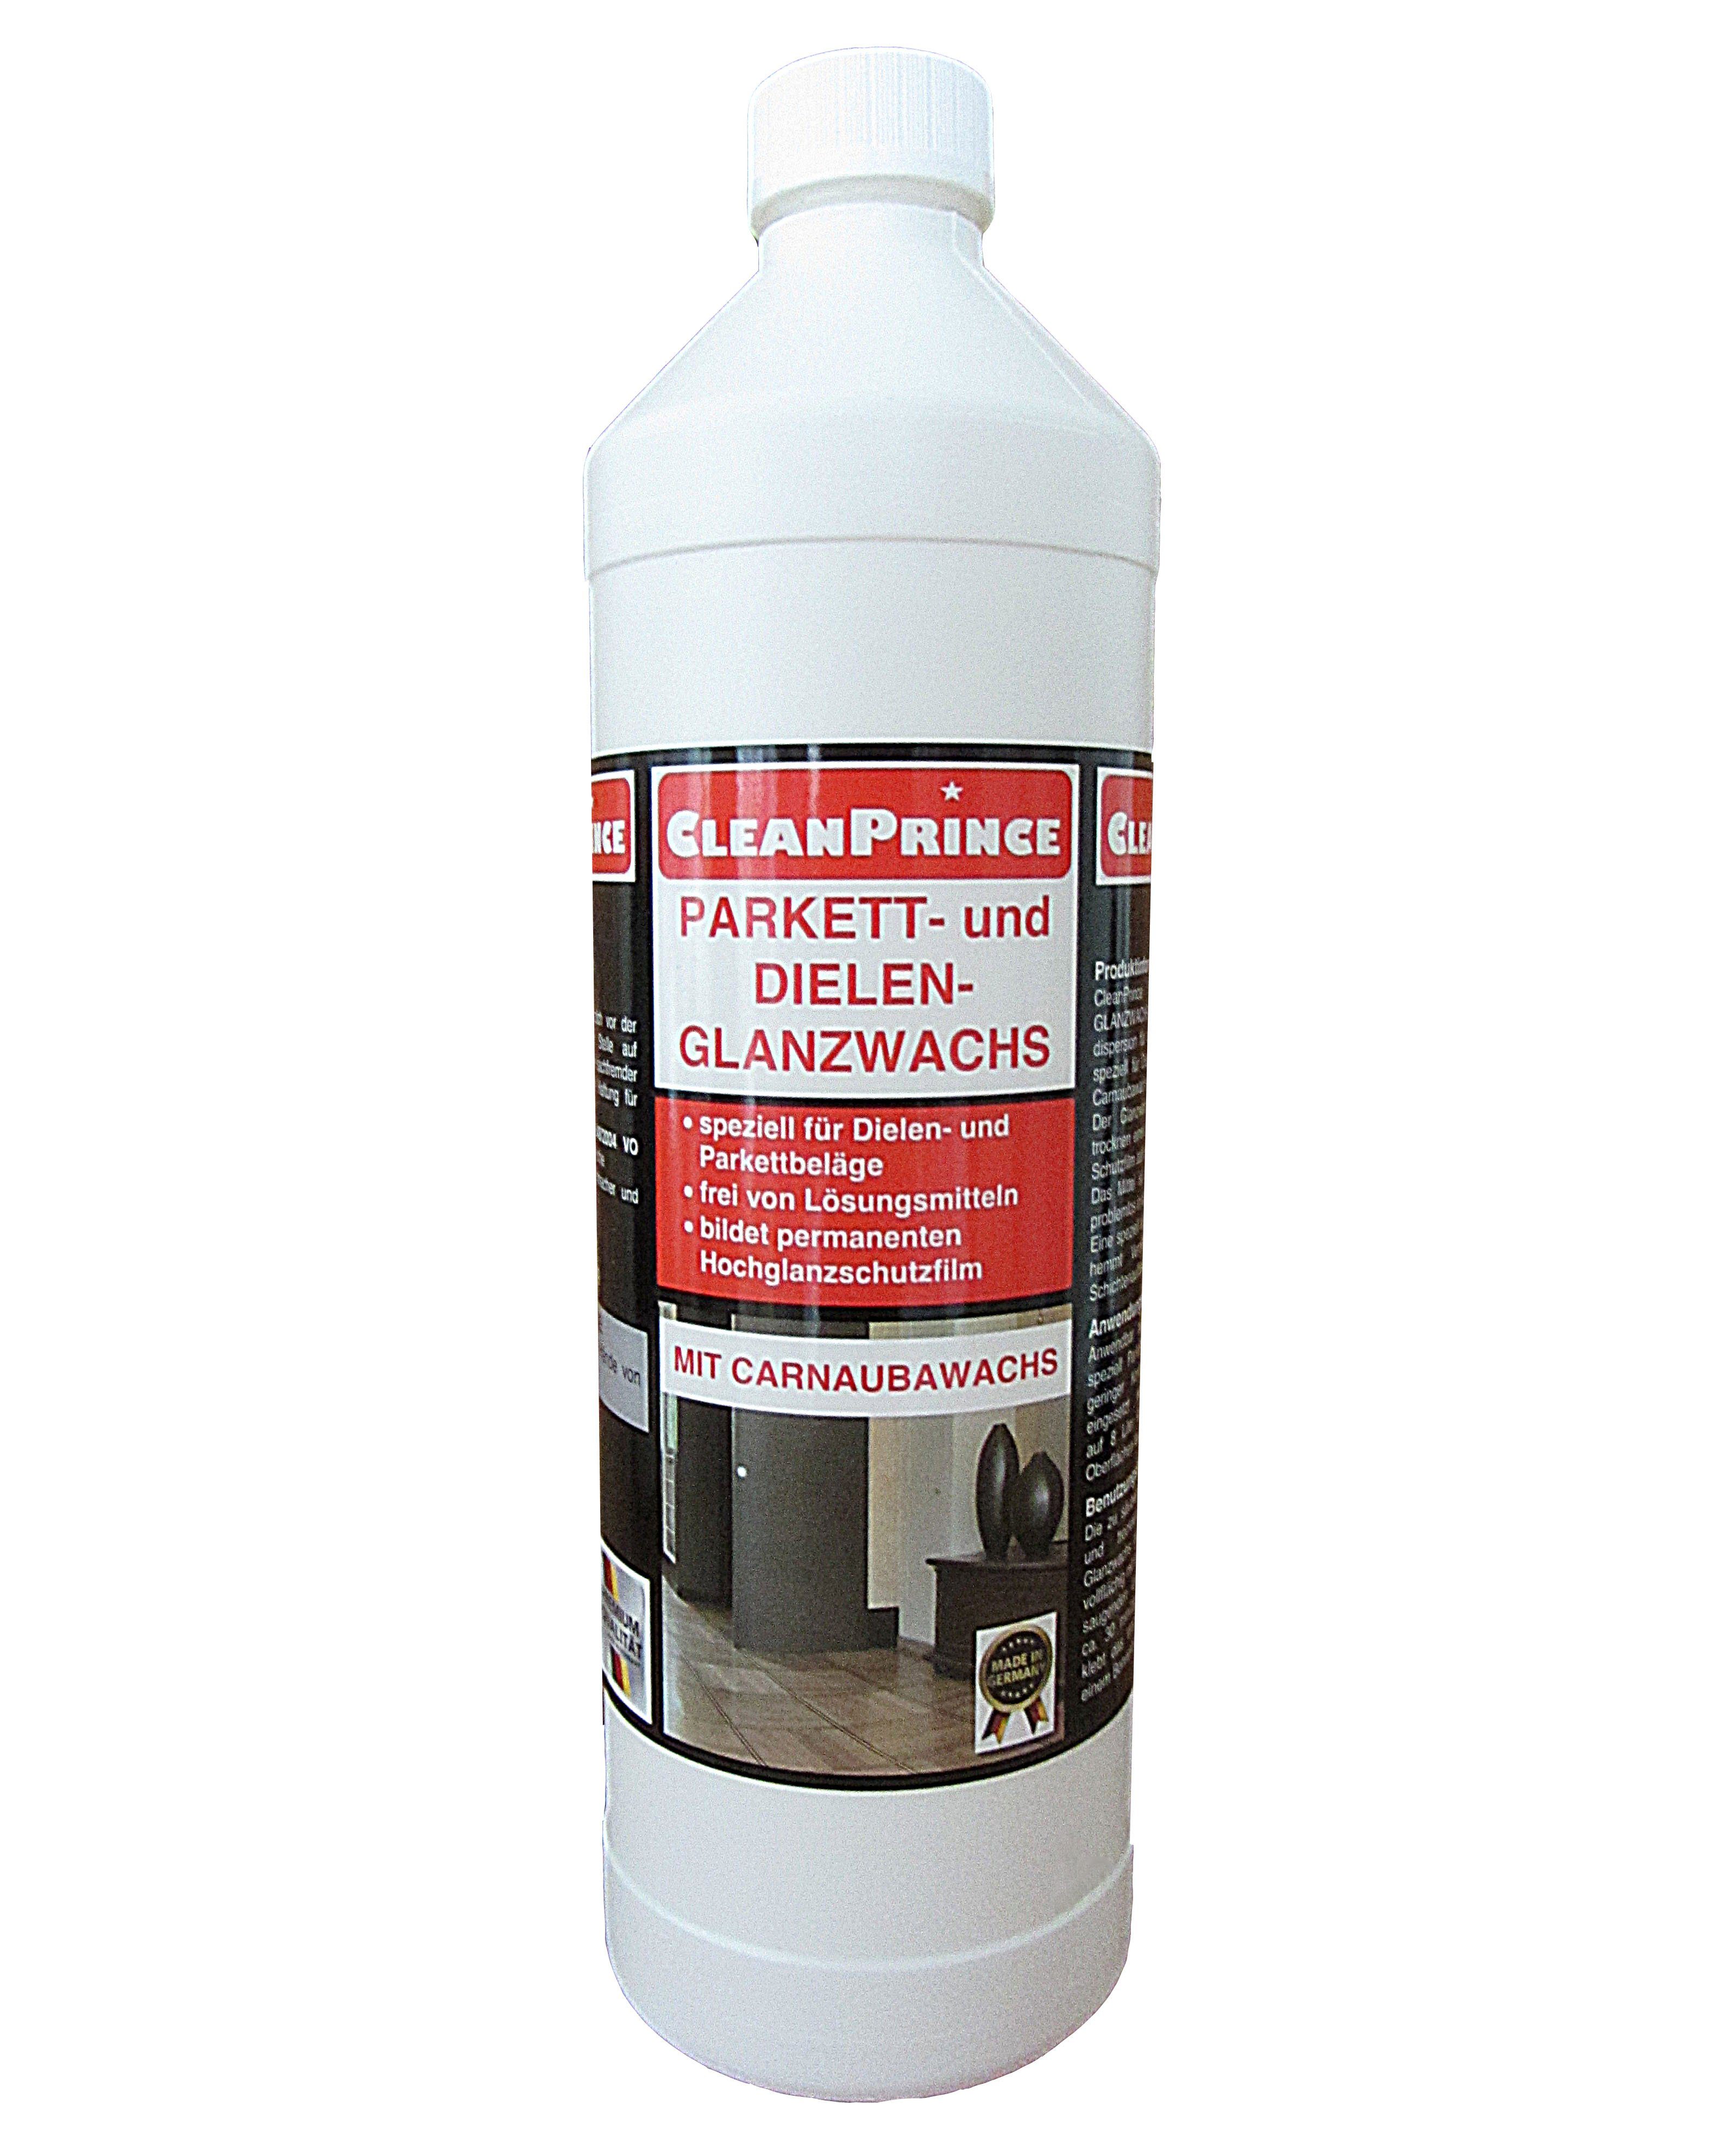 CleanPrince Parkett- und Dielen Glanzwachs flüssig Bodenpflegemittel, Versiegelungsdispersion für alle wasserfesten Bodenbeläge